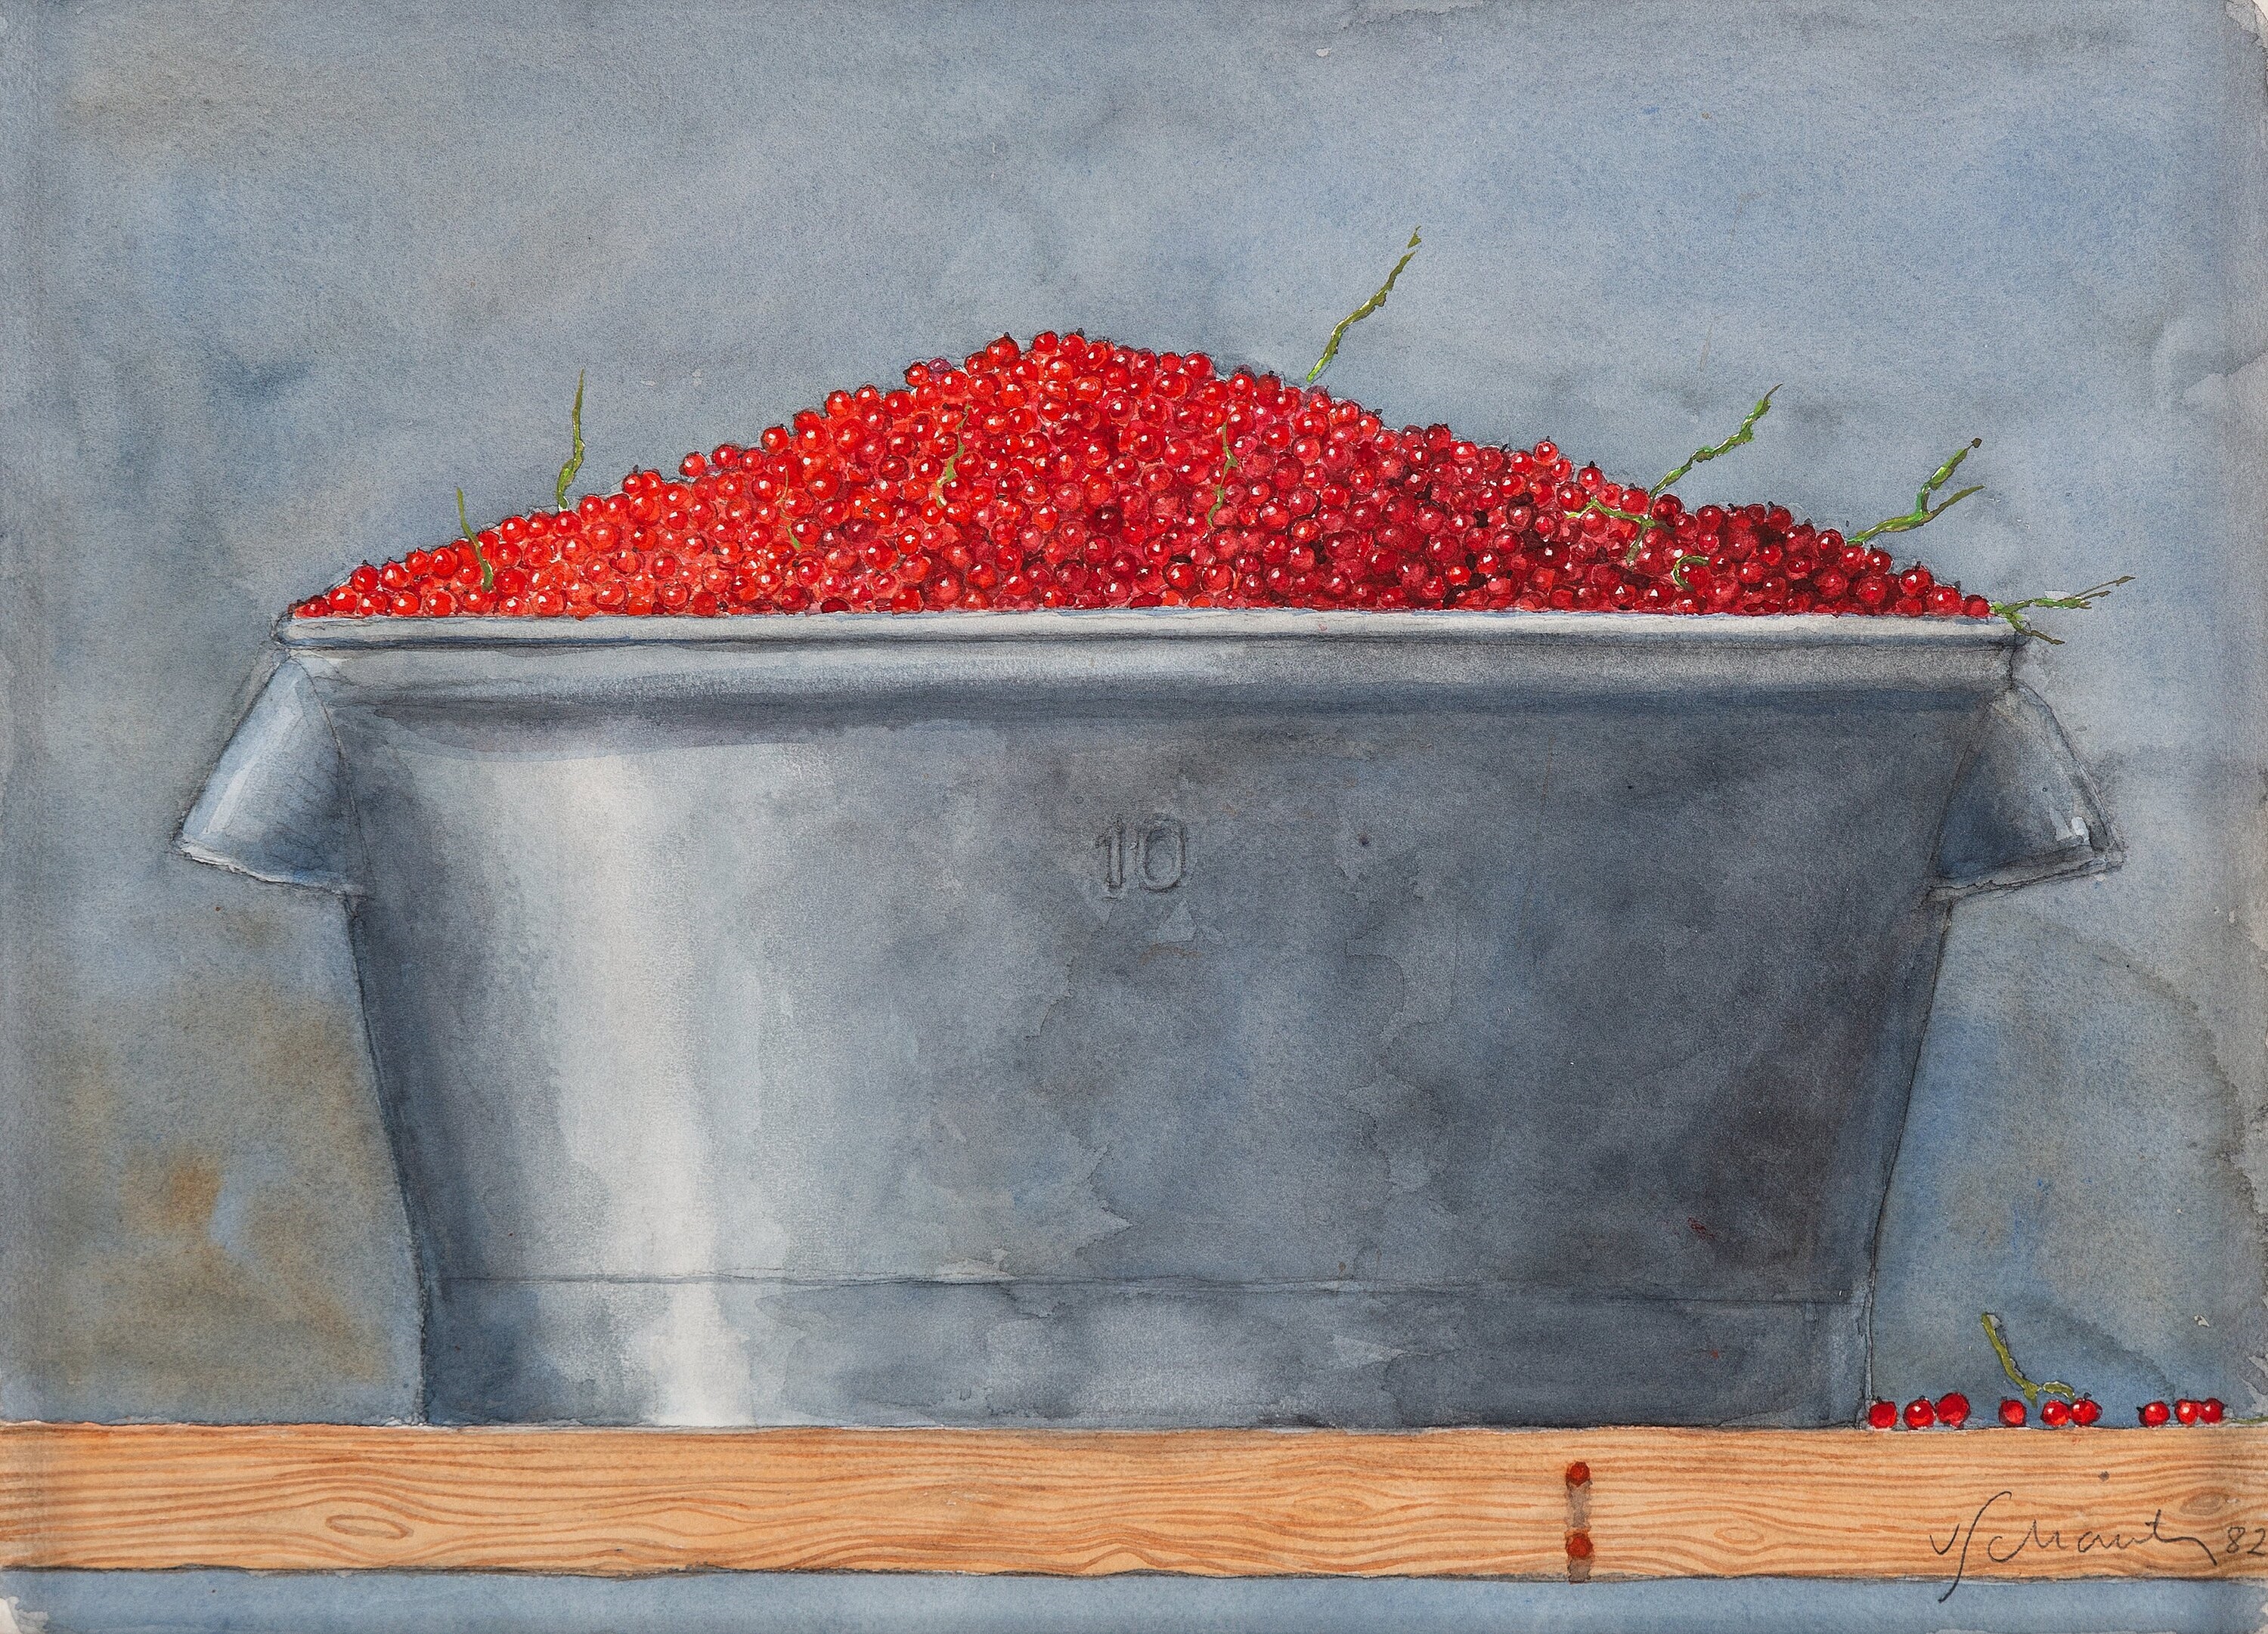 Red currant by Philip von Schantz, 1982